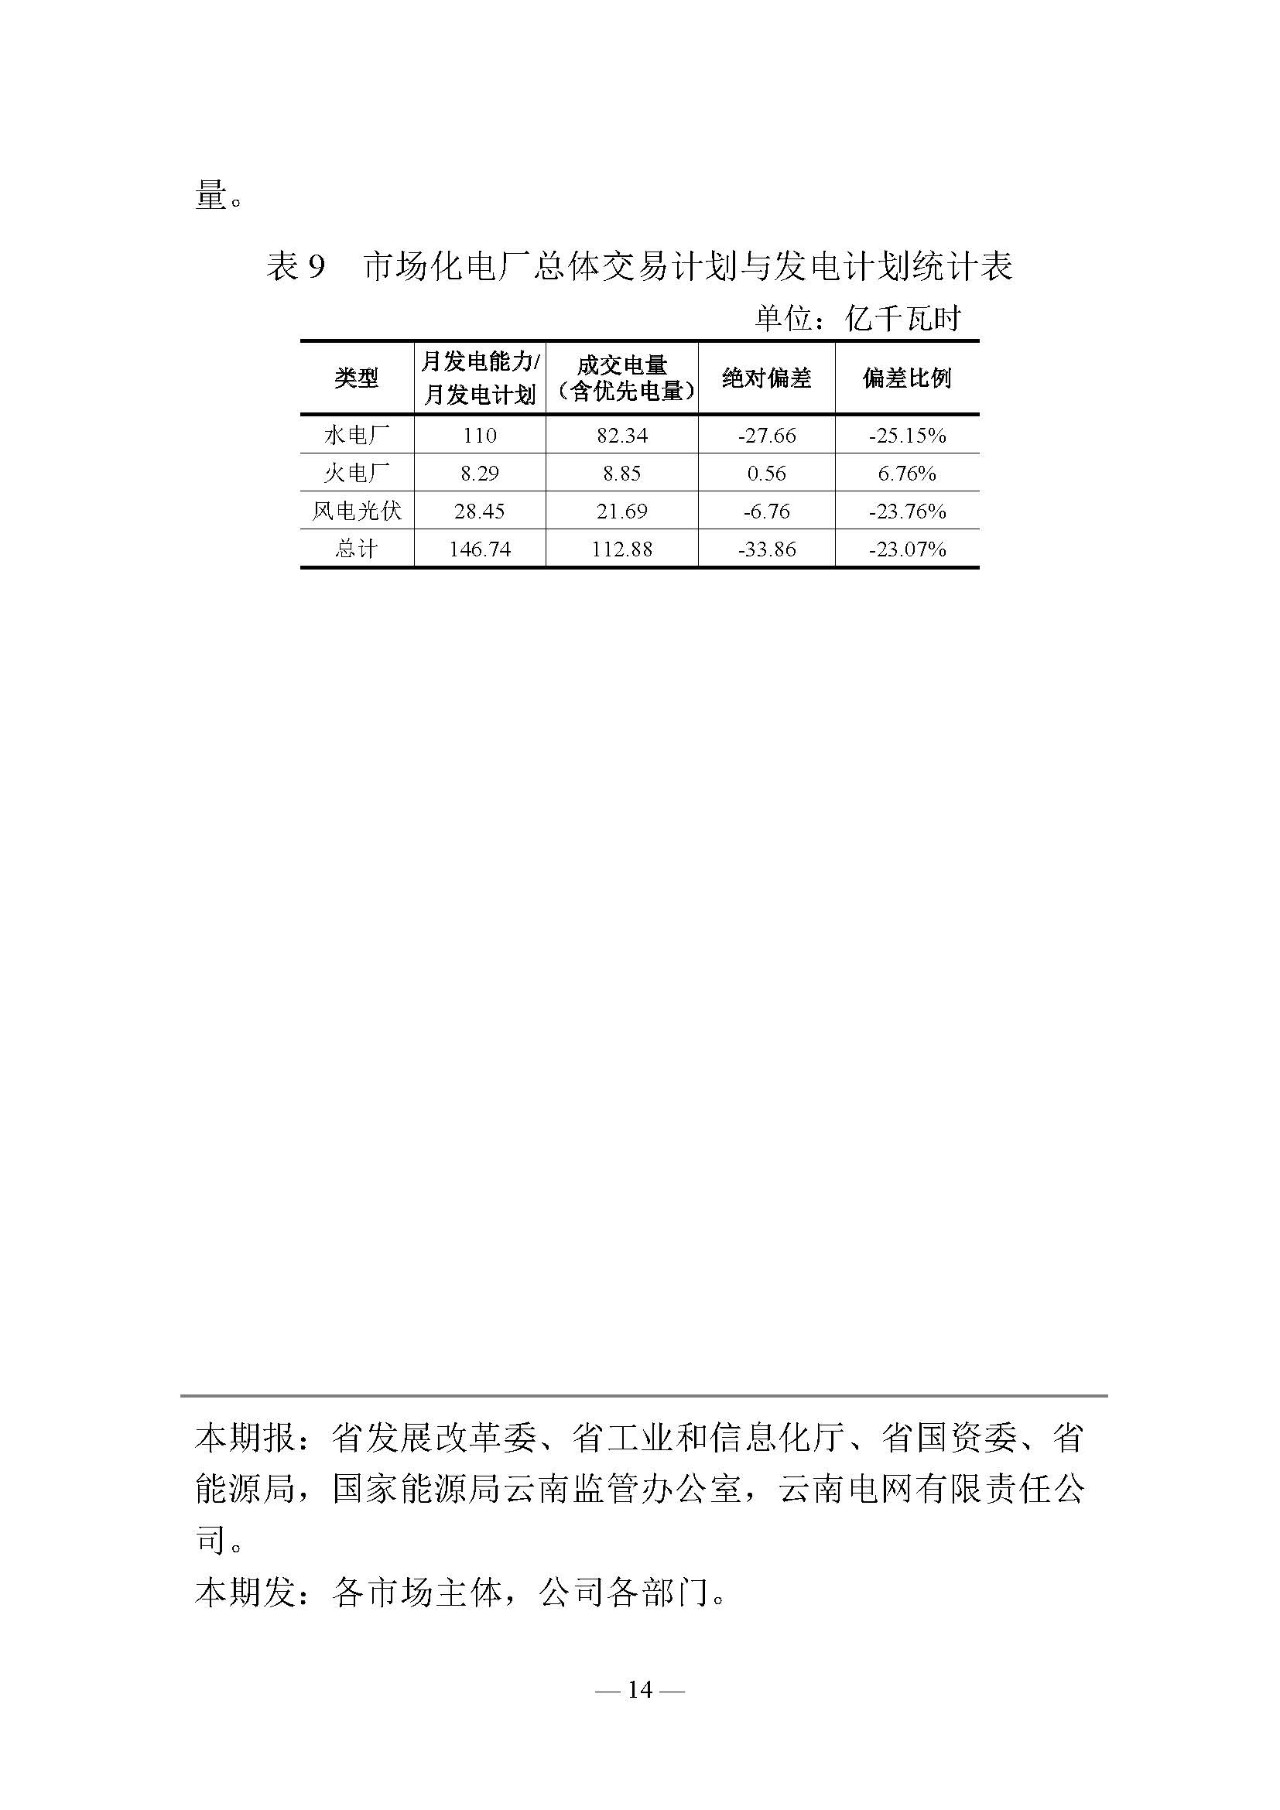 云南电力交易月报（2019年2月）：省内市场化交易电量54.9亿千瓦时